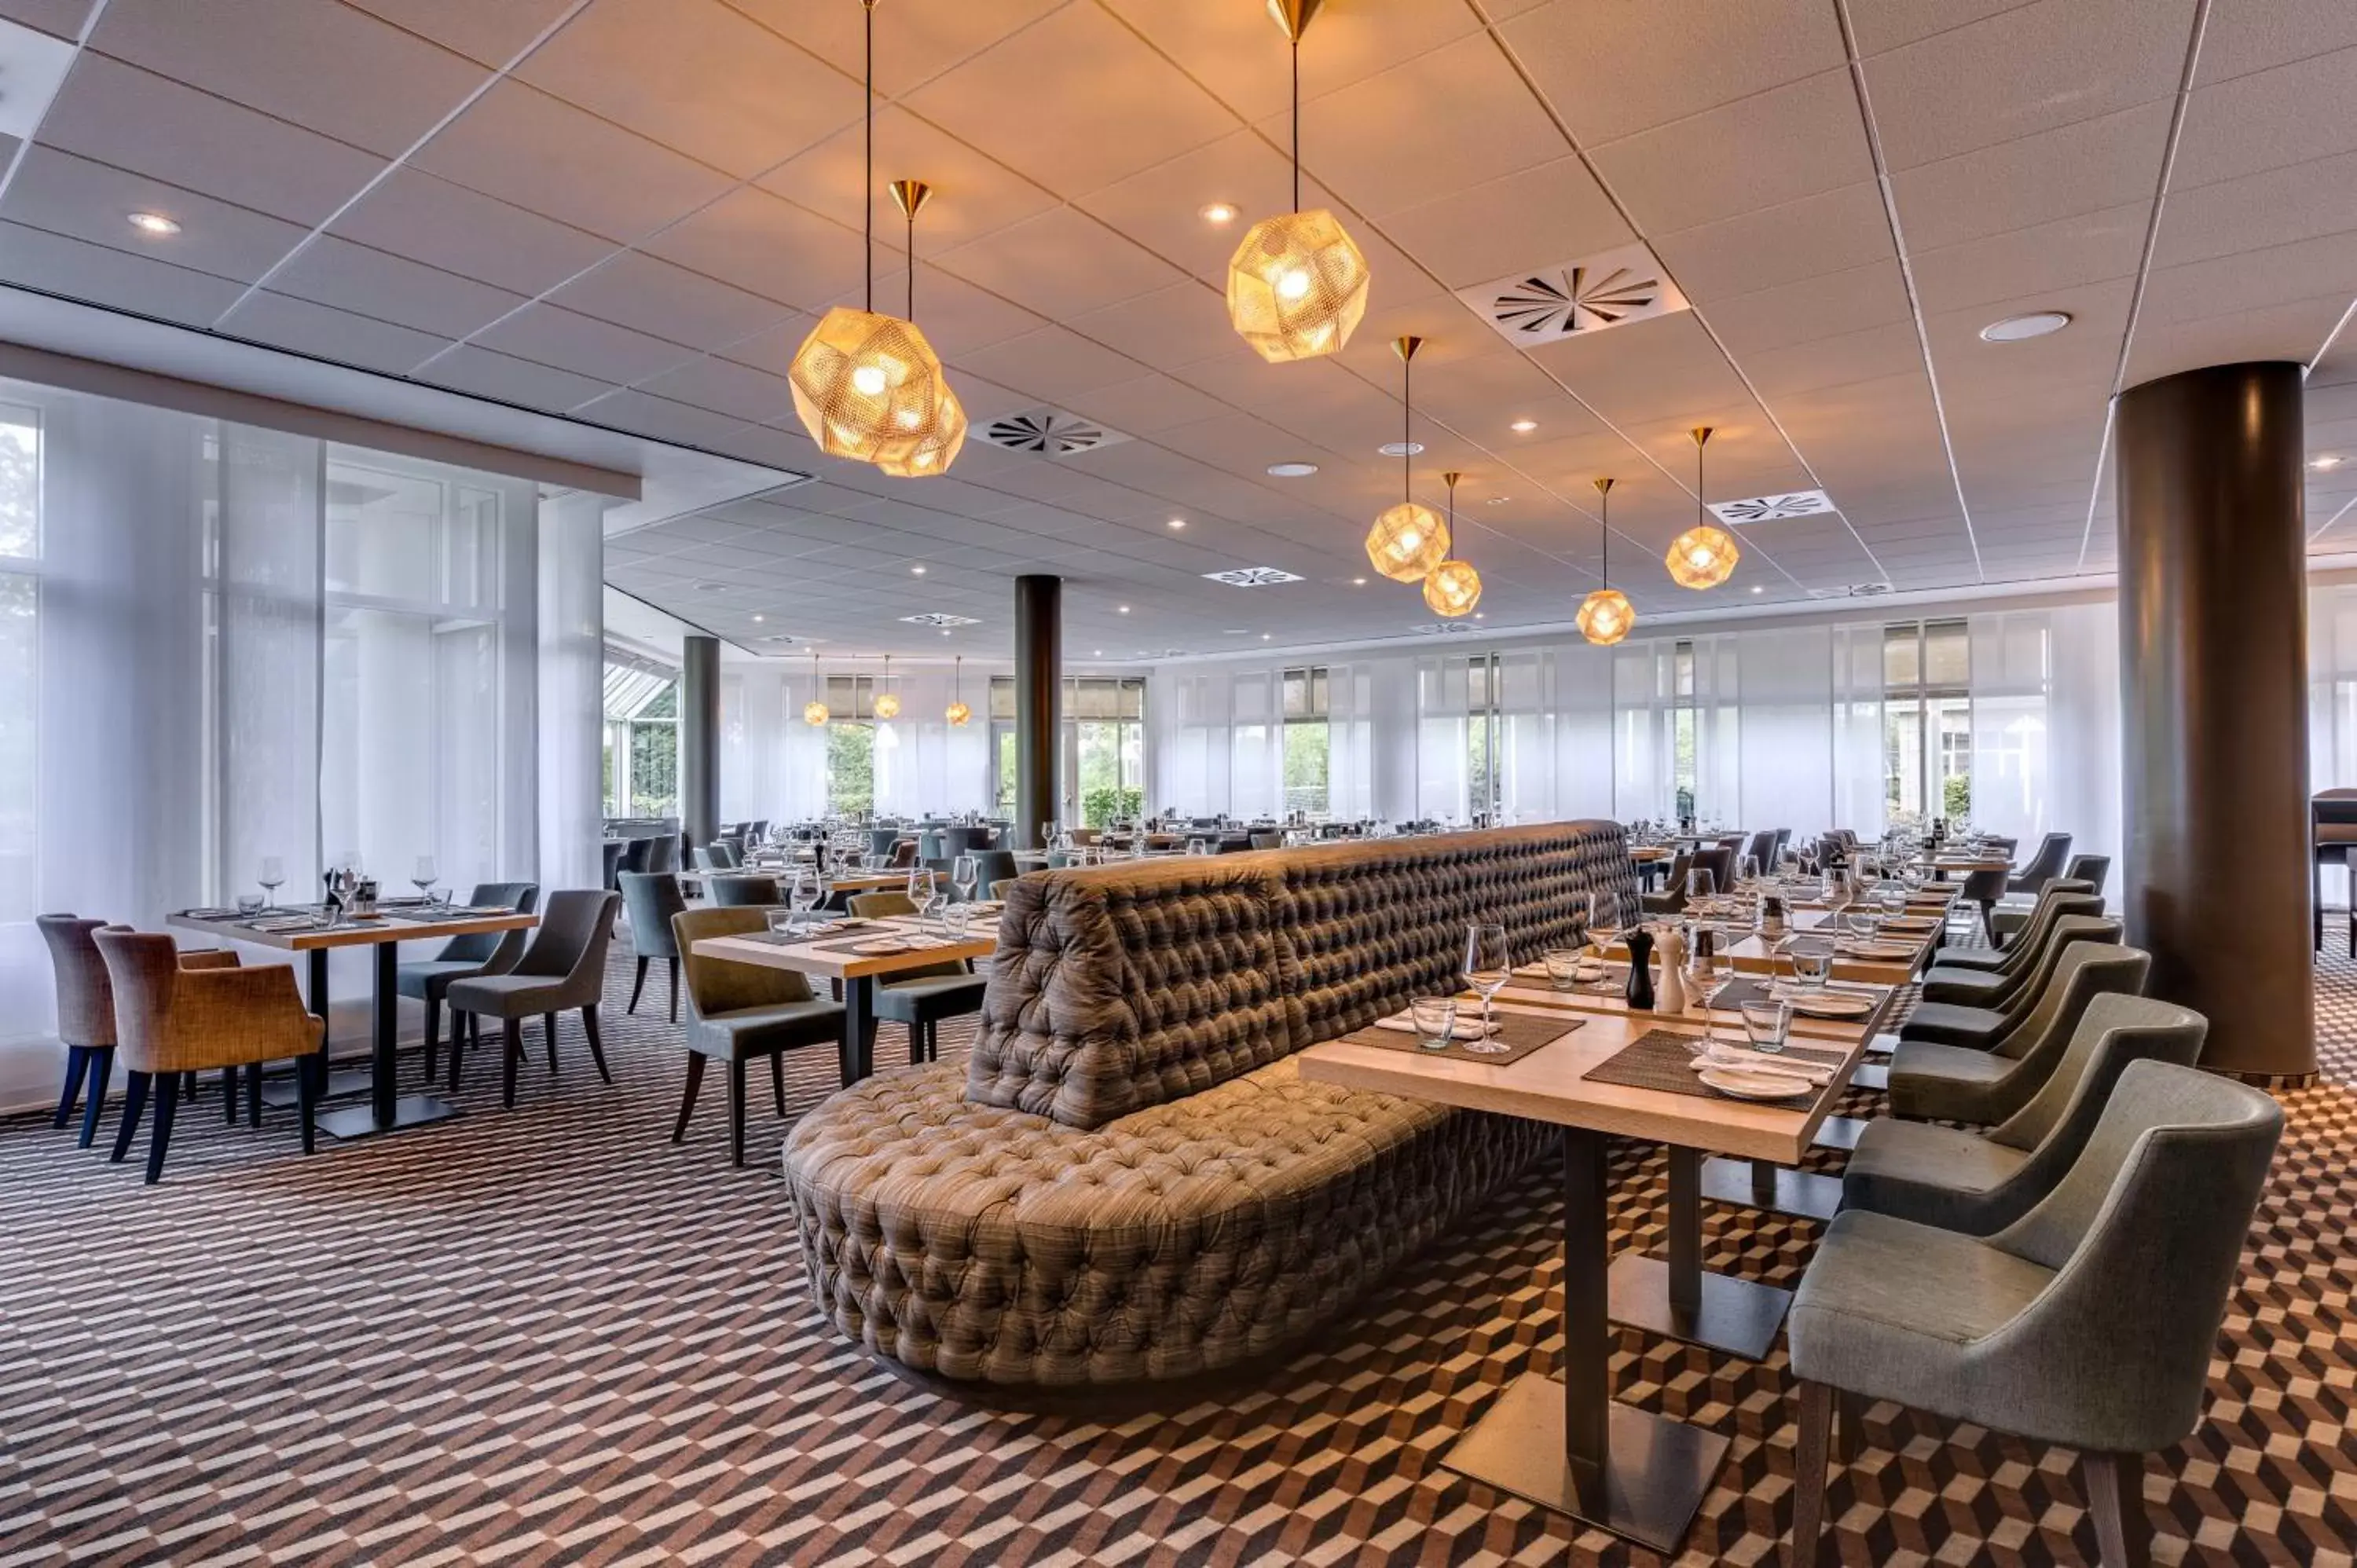 Restaurant/places to eat in Radisson Blu Hotel Dortmund